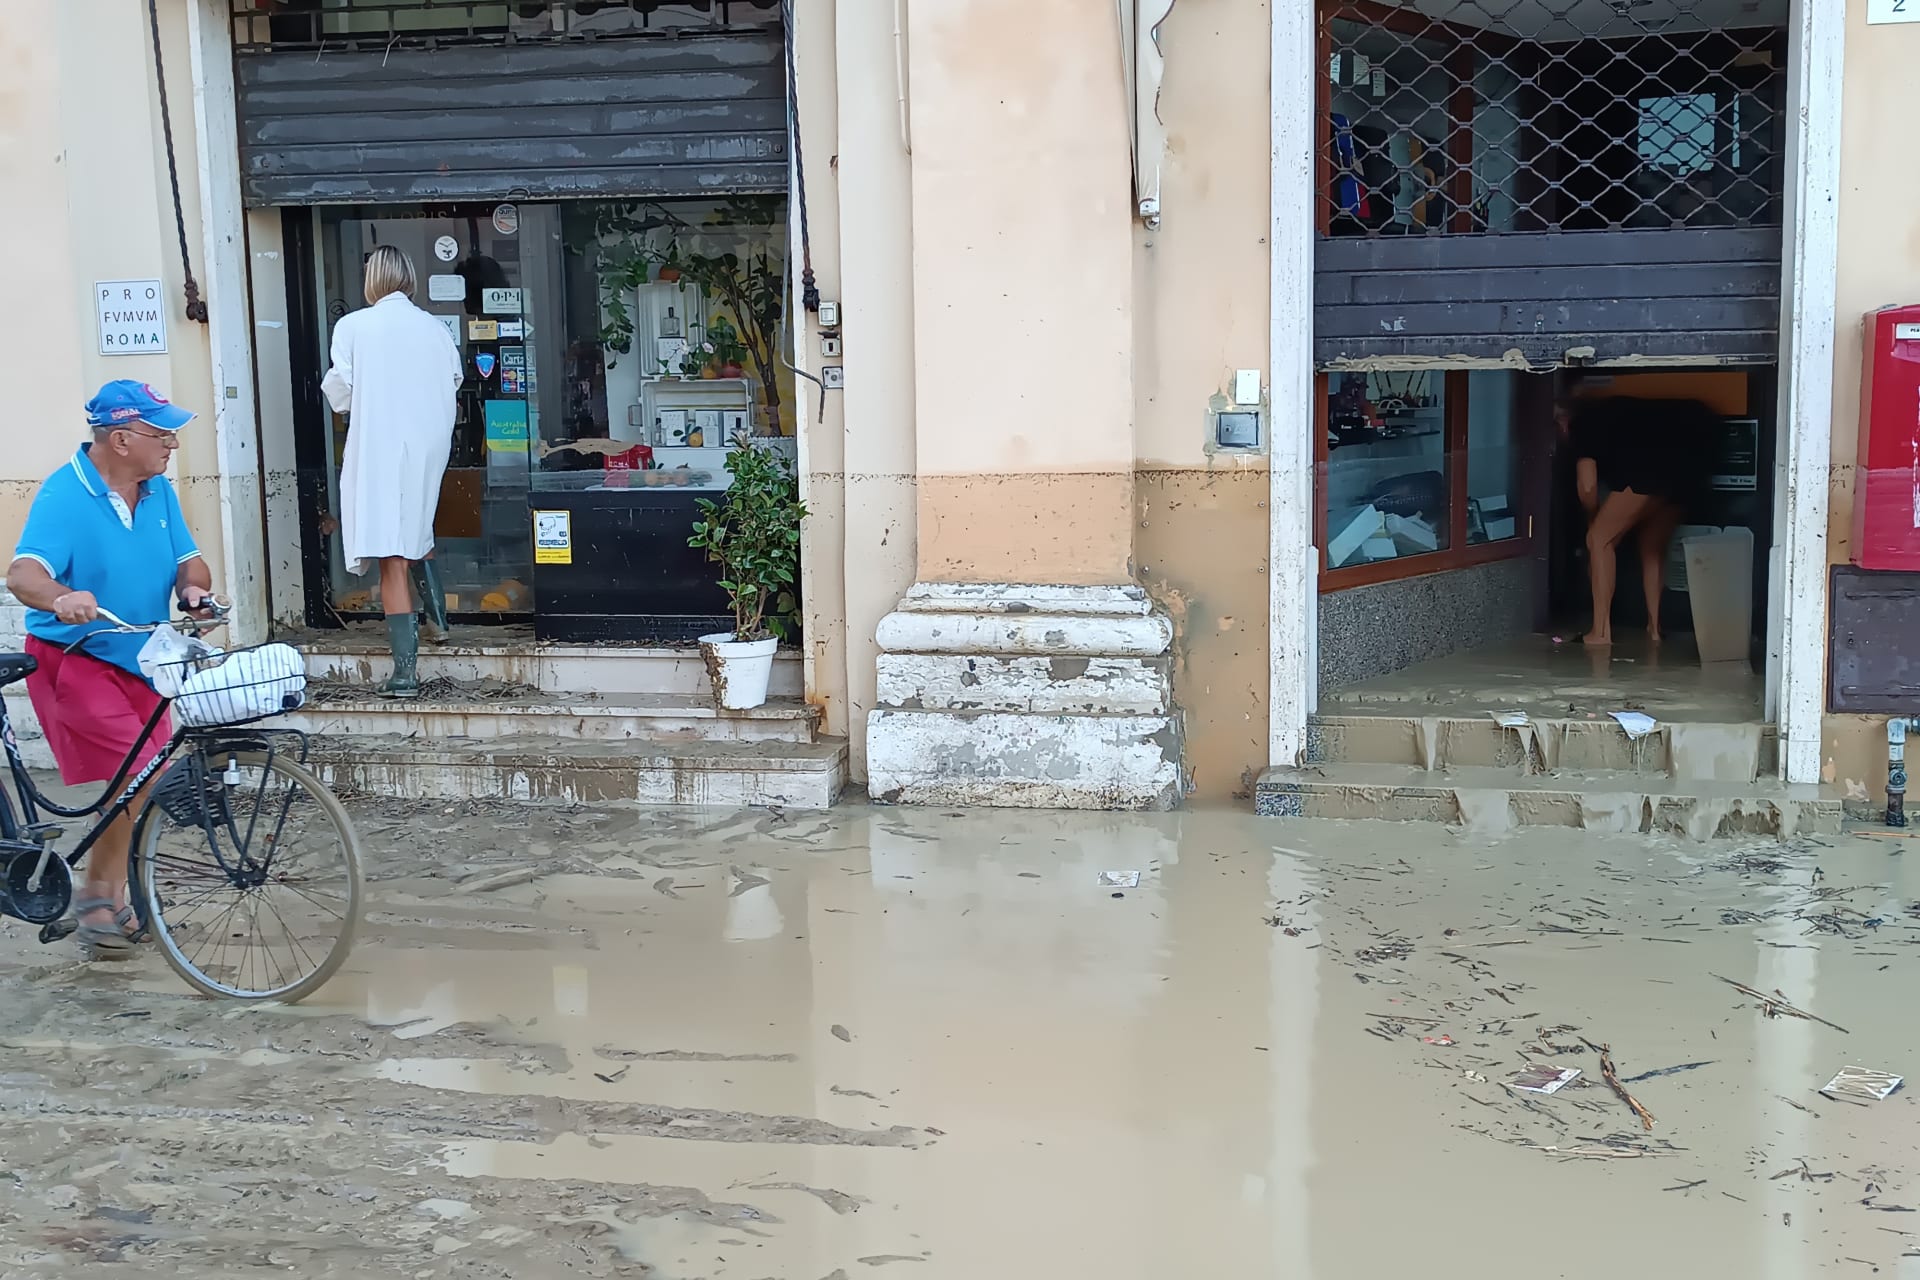 Záplavy ve střední Itálii (Senigallia, 16. 9. 2022)